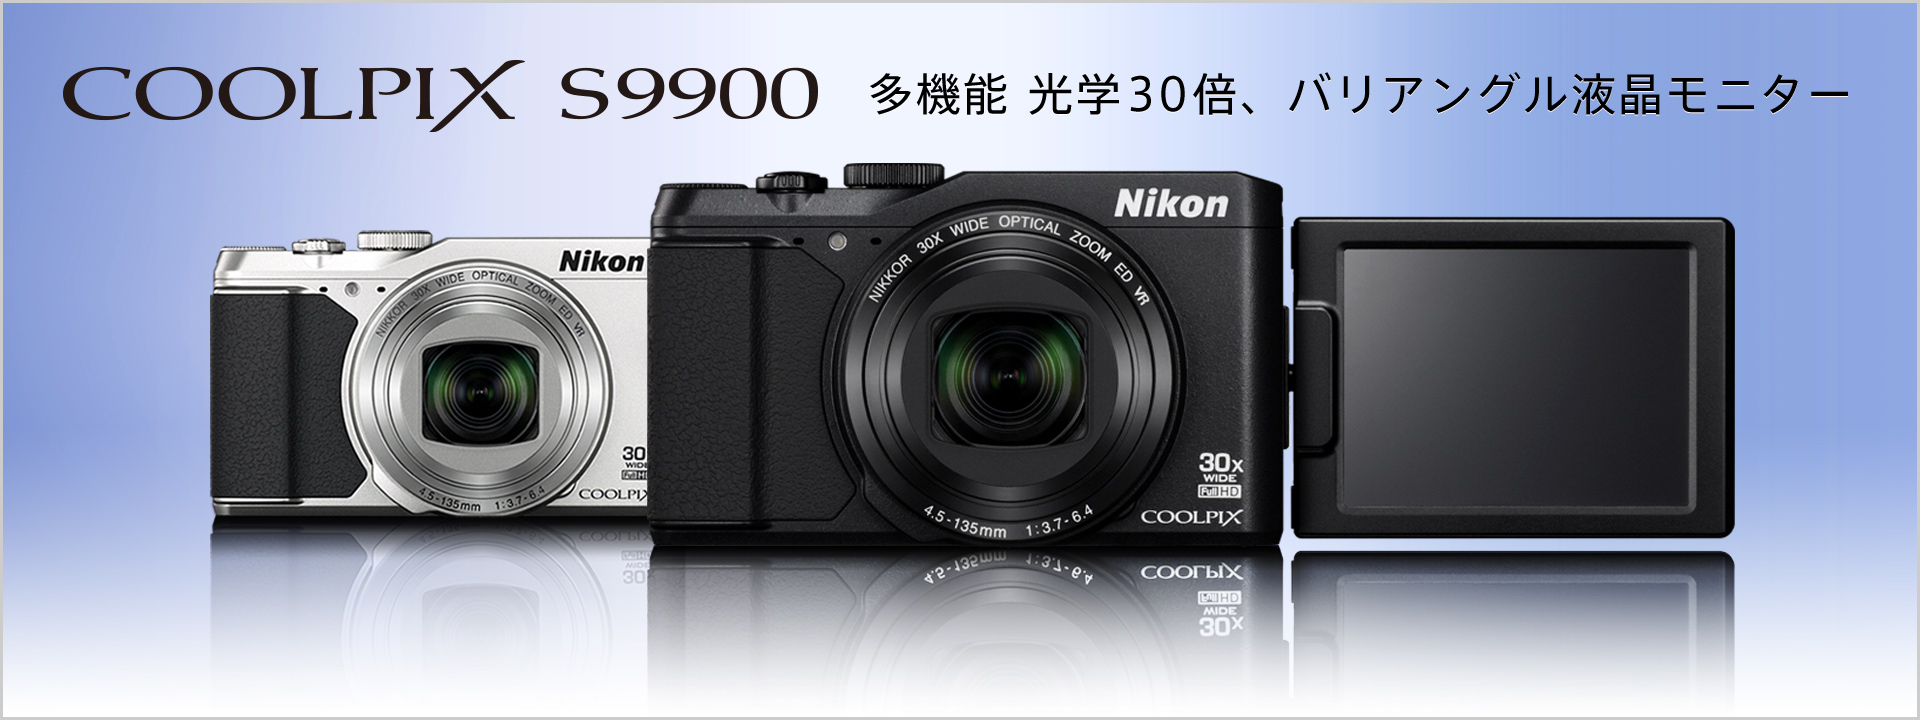 COOLPIX S9900 - 概要 | コンパクトデジタルカメラ | ニコンイメージング